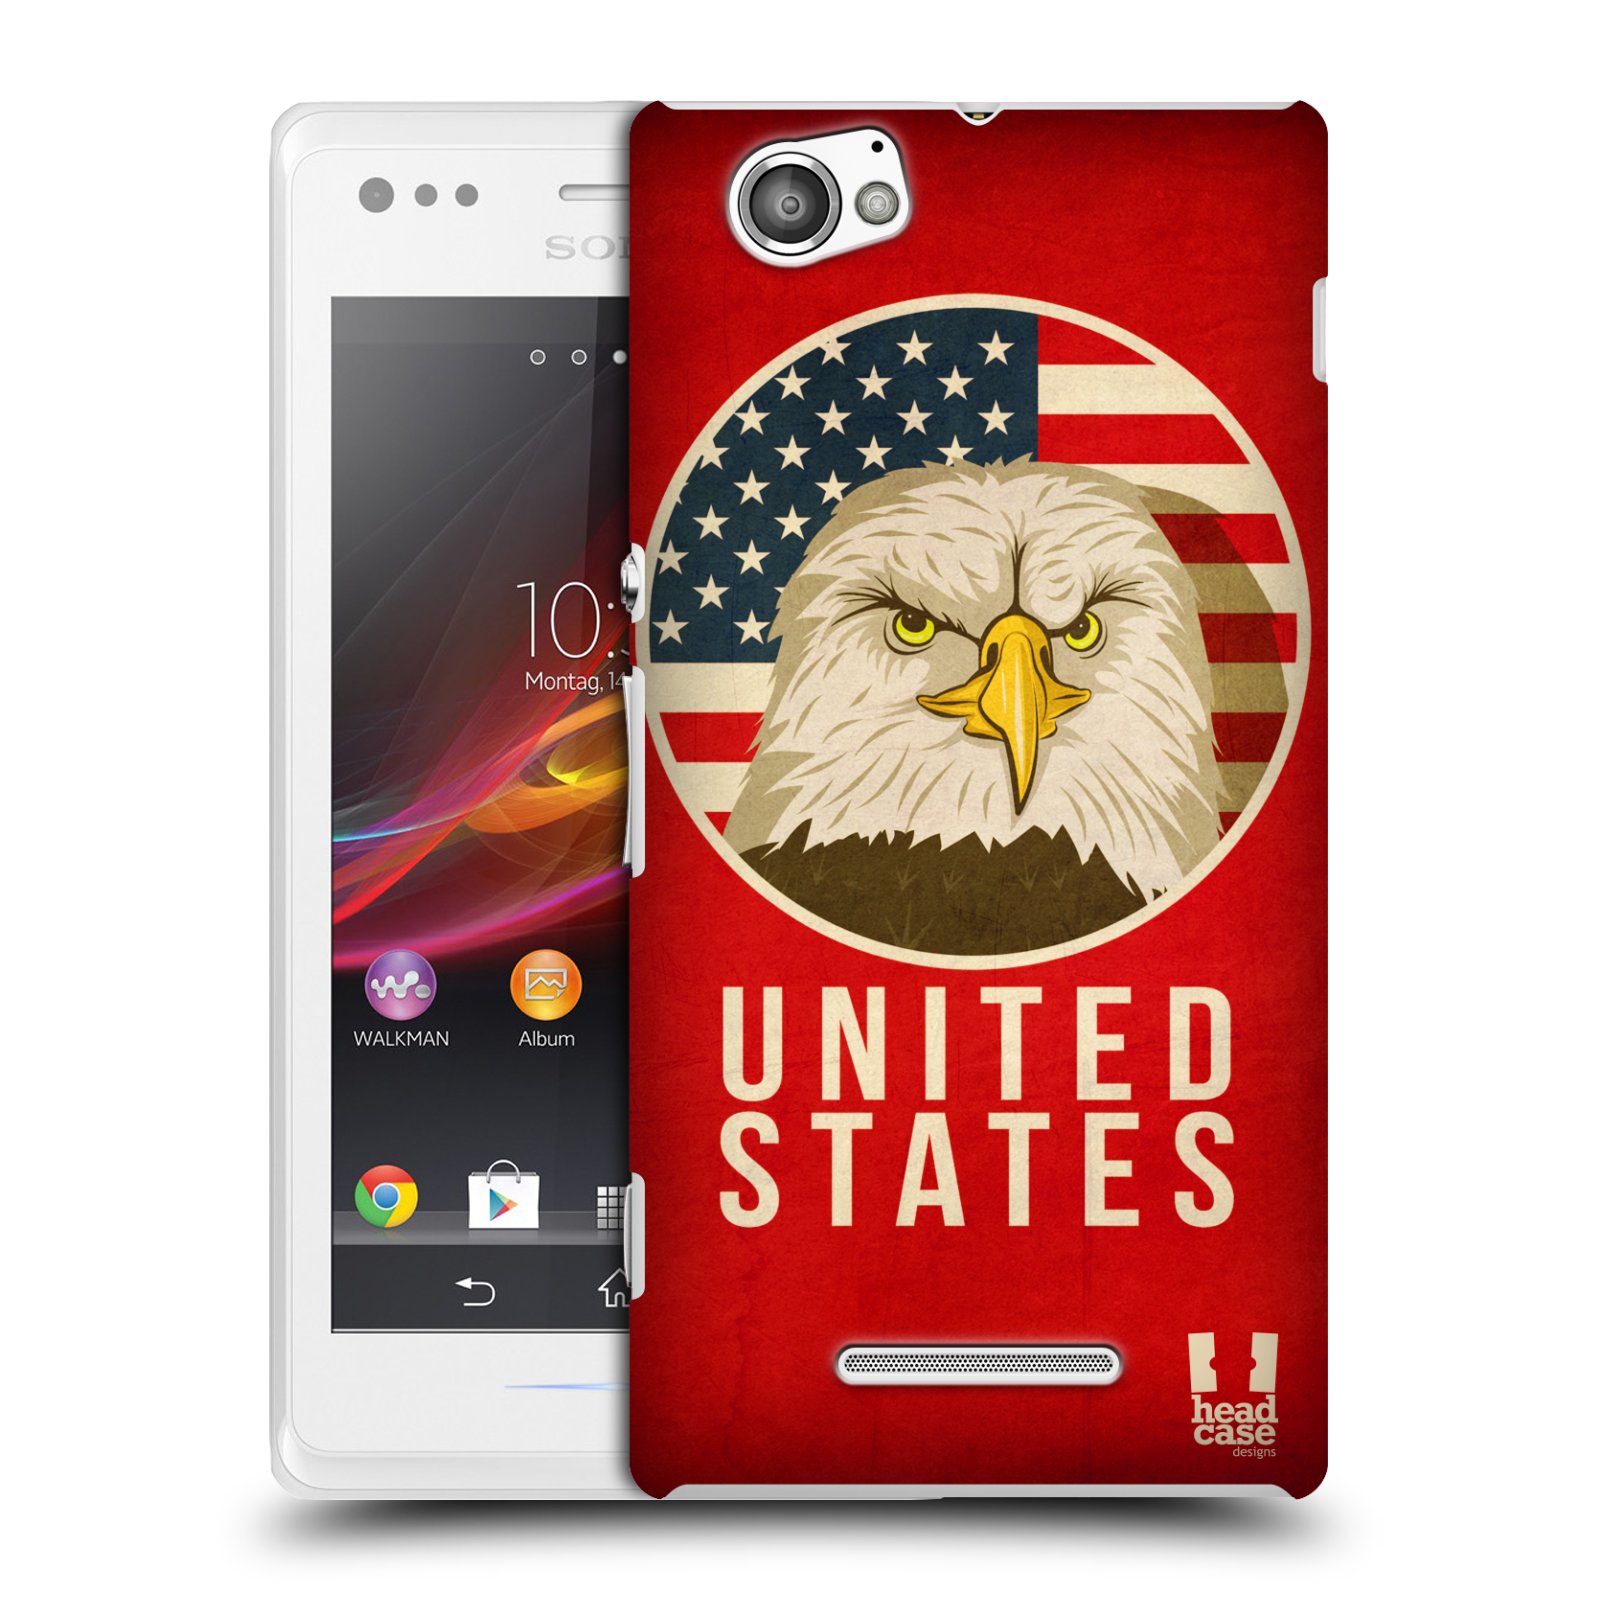 HEAD CASE plastový obal na mobil Sony Xperia M vzor Patriotismus zvíře symbol USA OREL